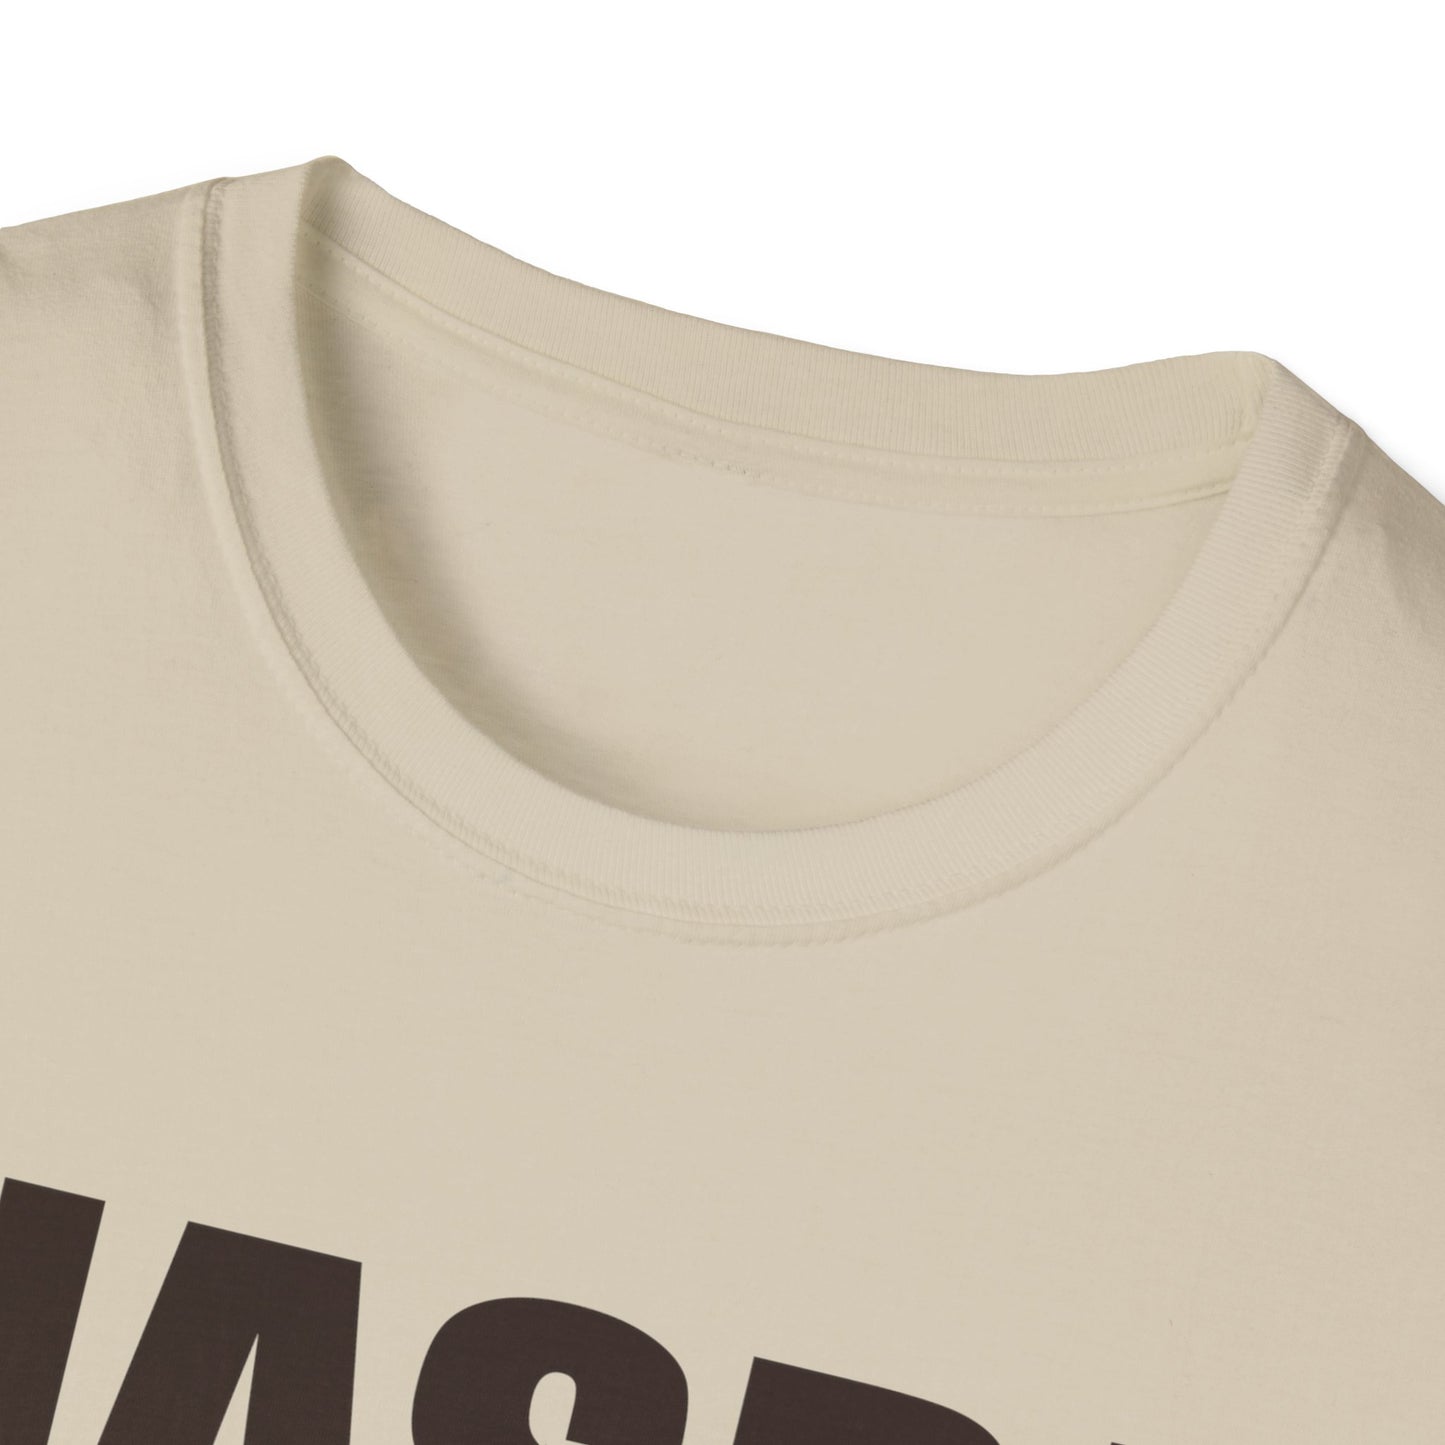 VERI   TEAM BORDER TERRIER - NASDA  Unisex Softstyle T-Shirt